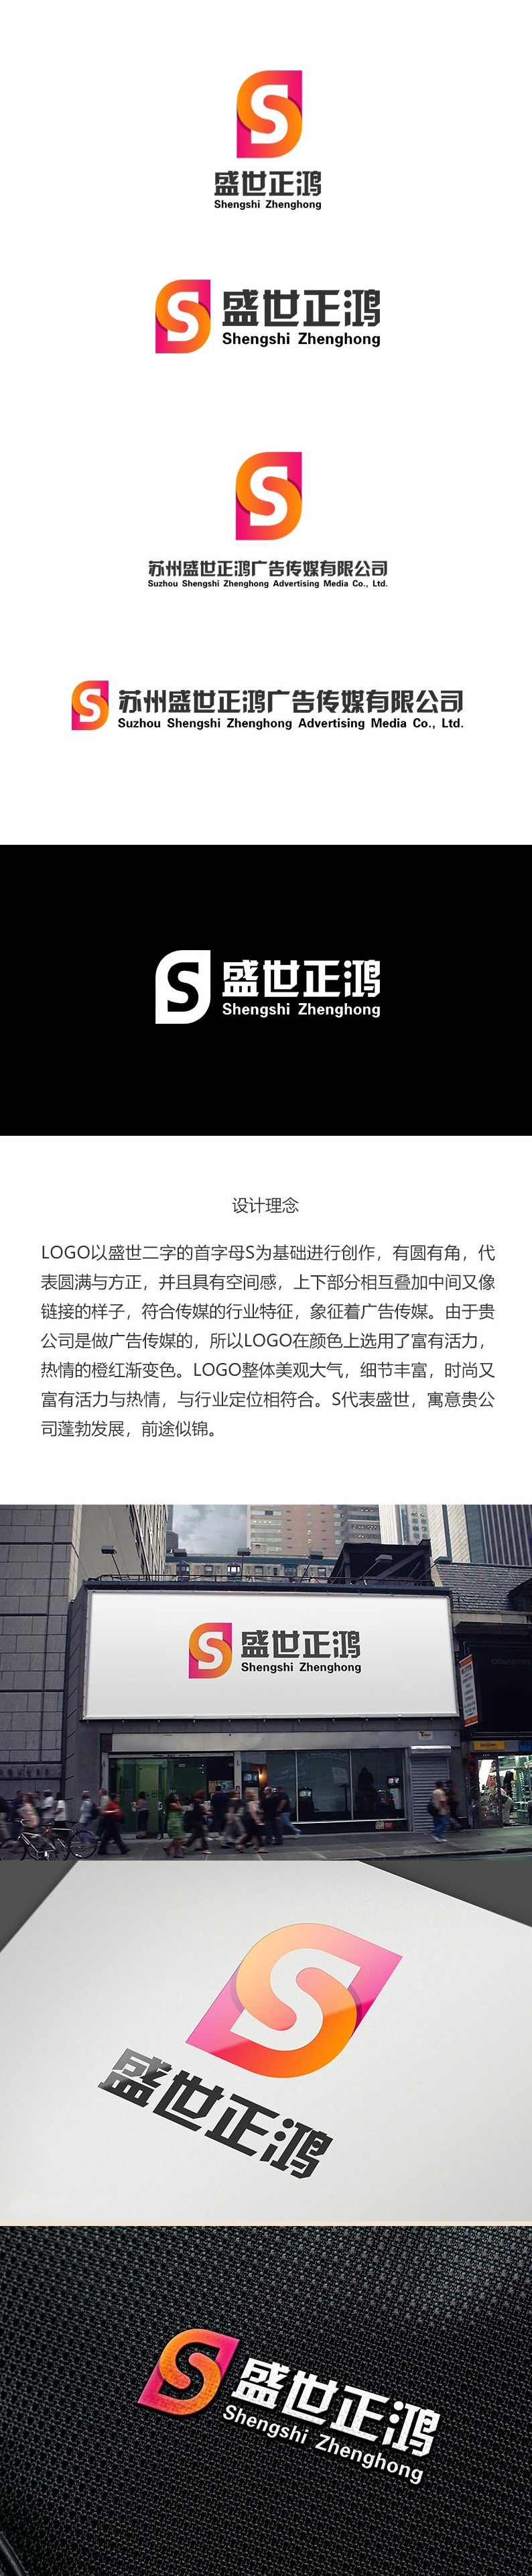 苏州盛世正鸿广告传媒有限公司LOGO图0